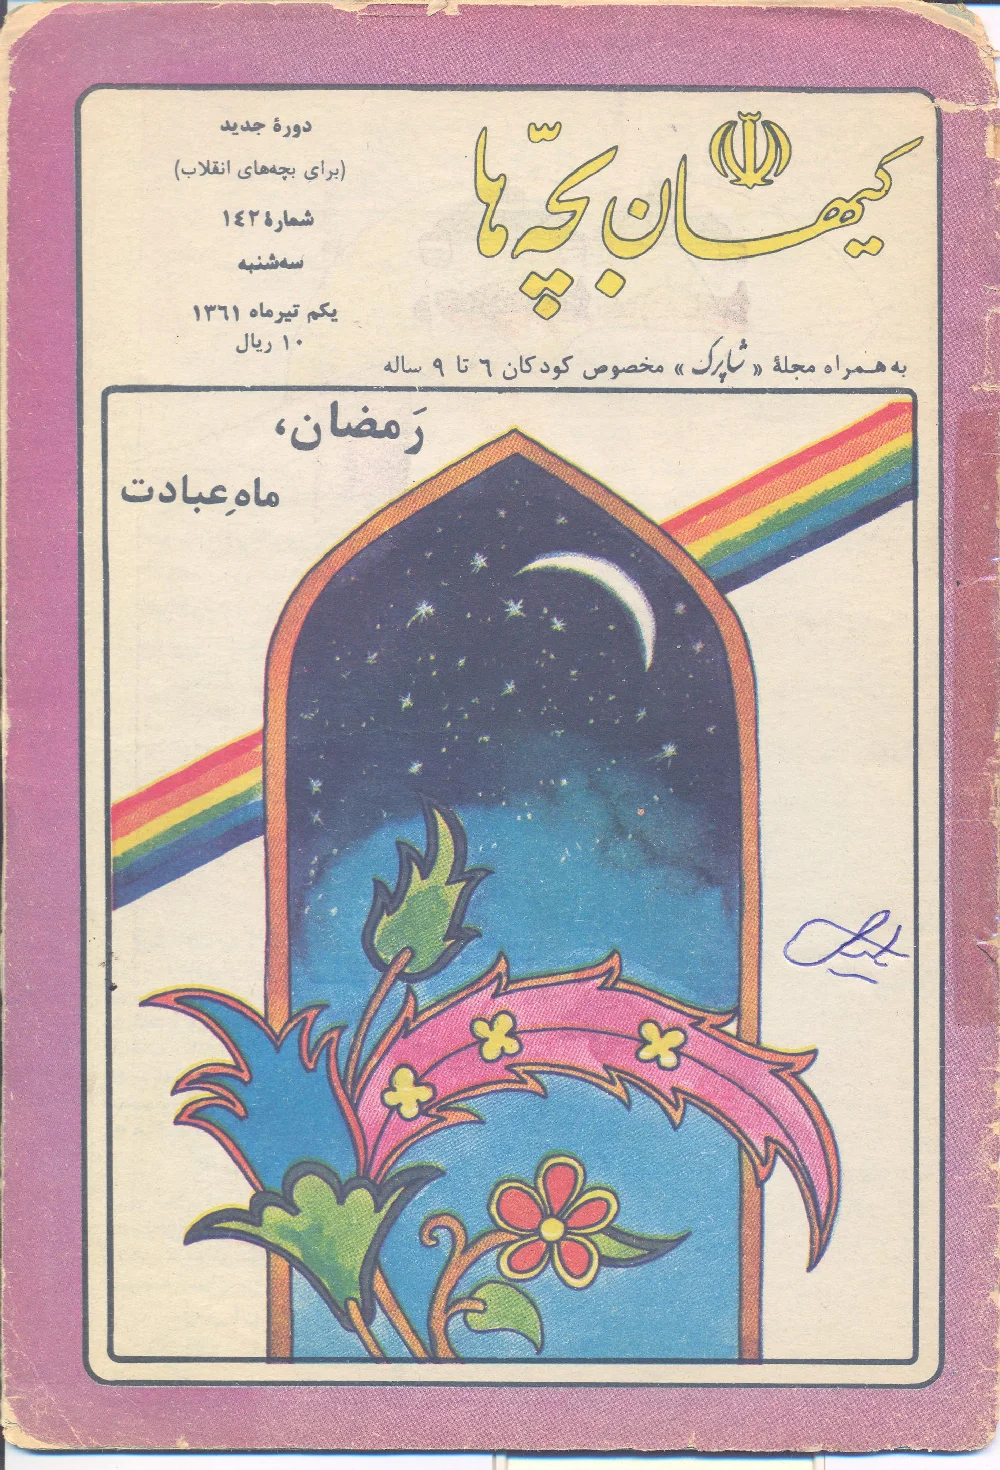 کیهان بچه ها - دوره جدید برای بچه های انقلاب - شماره ۱۴۲ - تیر ۱۳۶۱